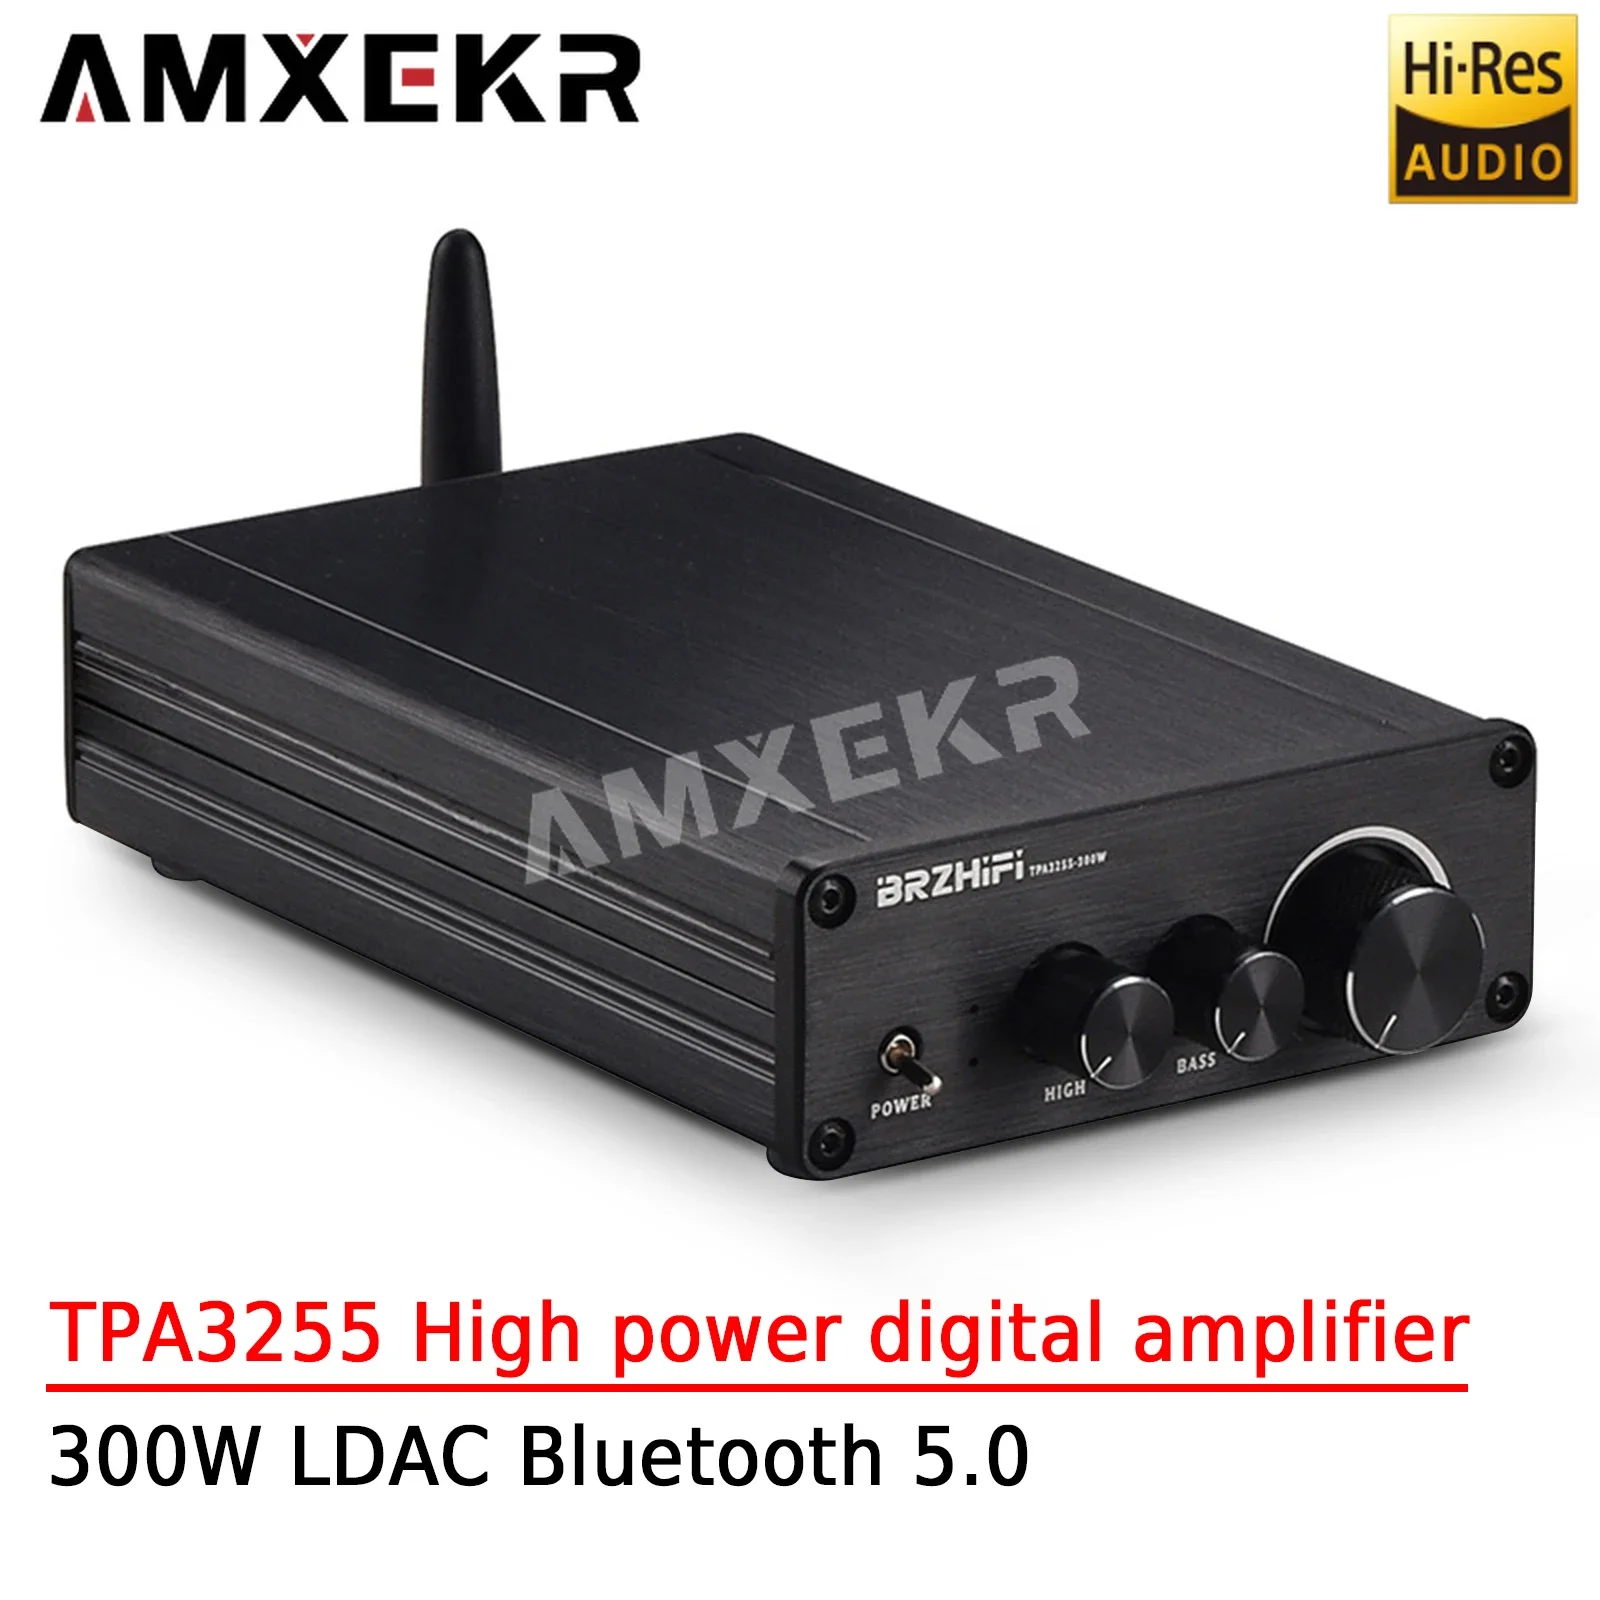 

Цифровой усилитель AMXEKR TPA3255 HIFI высокой мощности 300 Вт стерео усилитель мощности с тяжелыми басами LDAC Bluetooth 5,0 домашний усилитель мощности